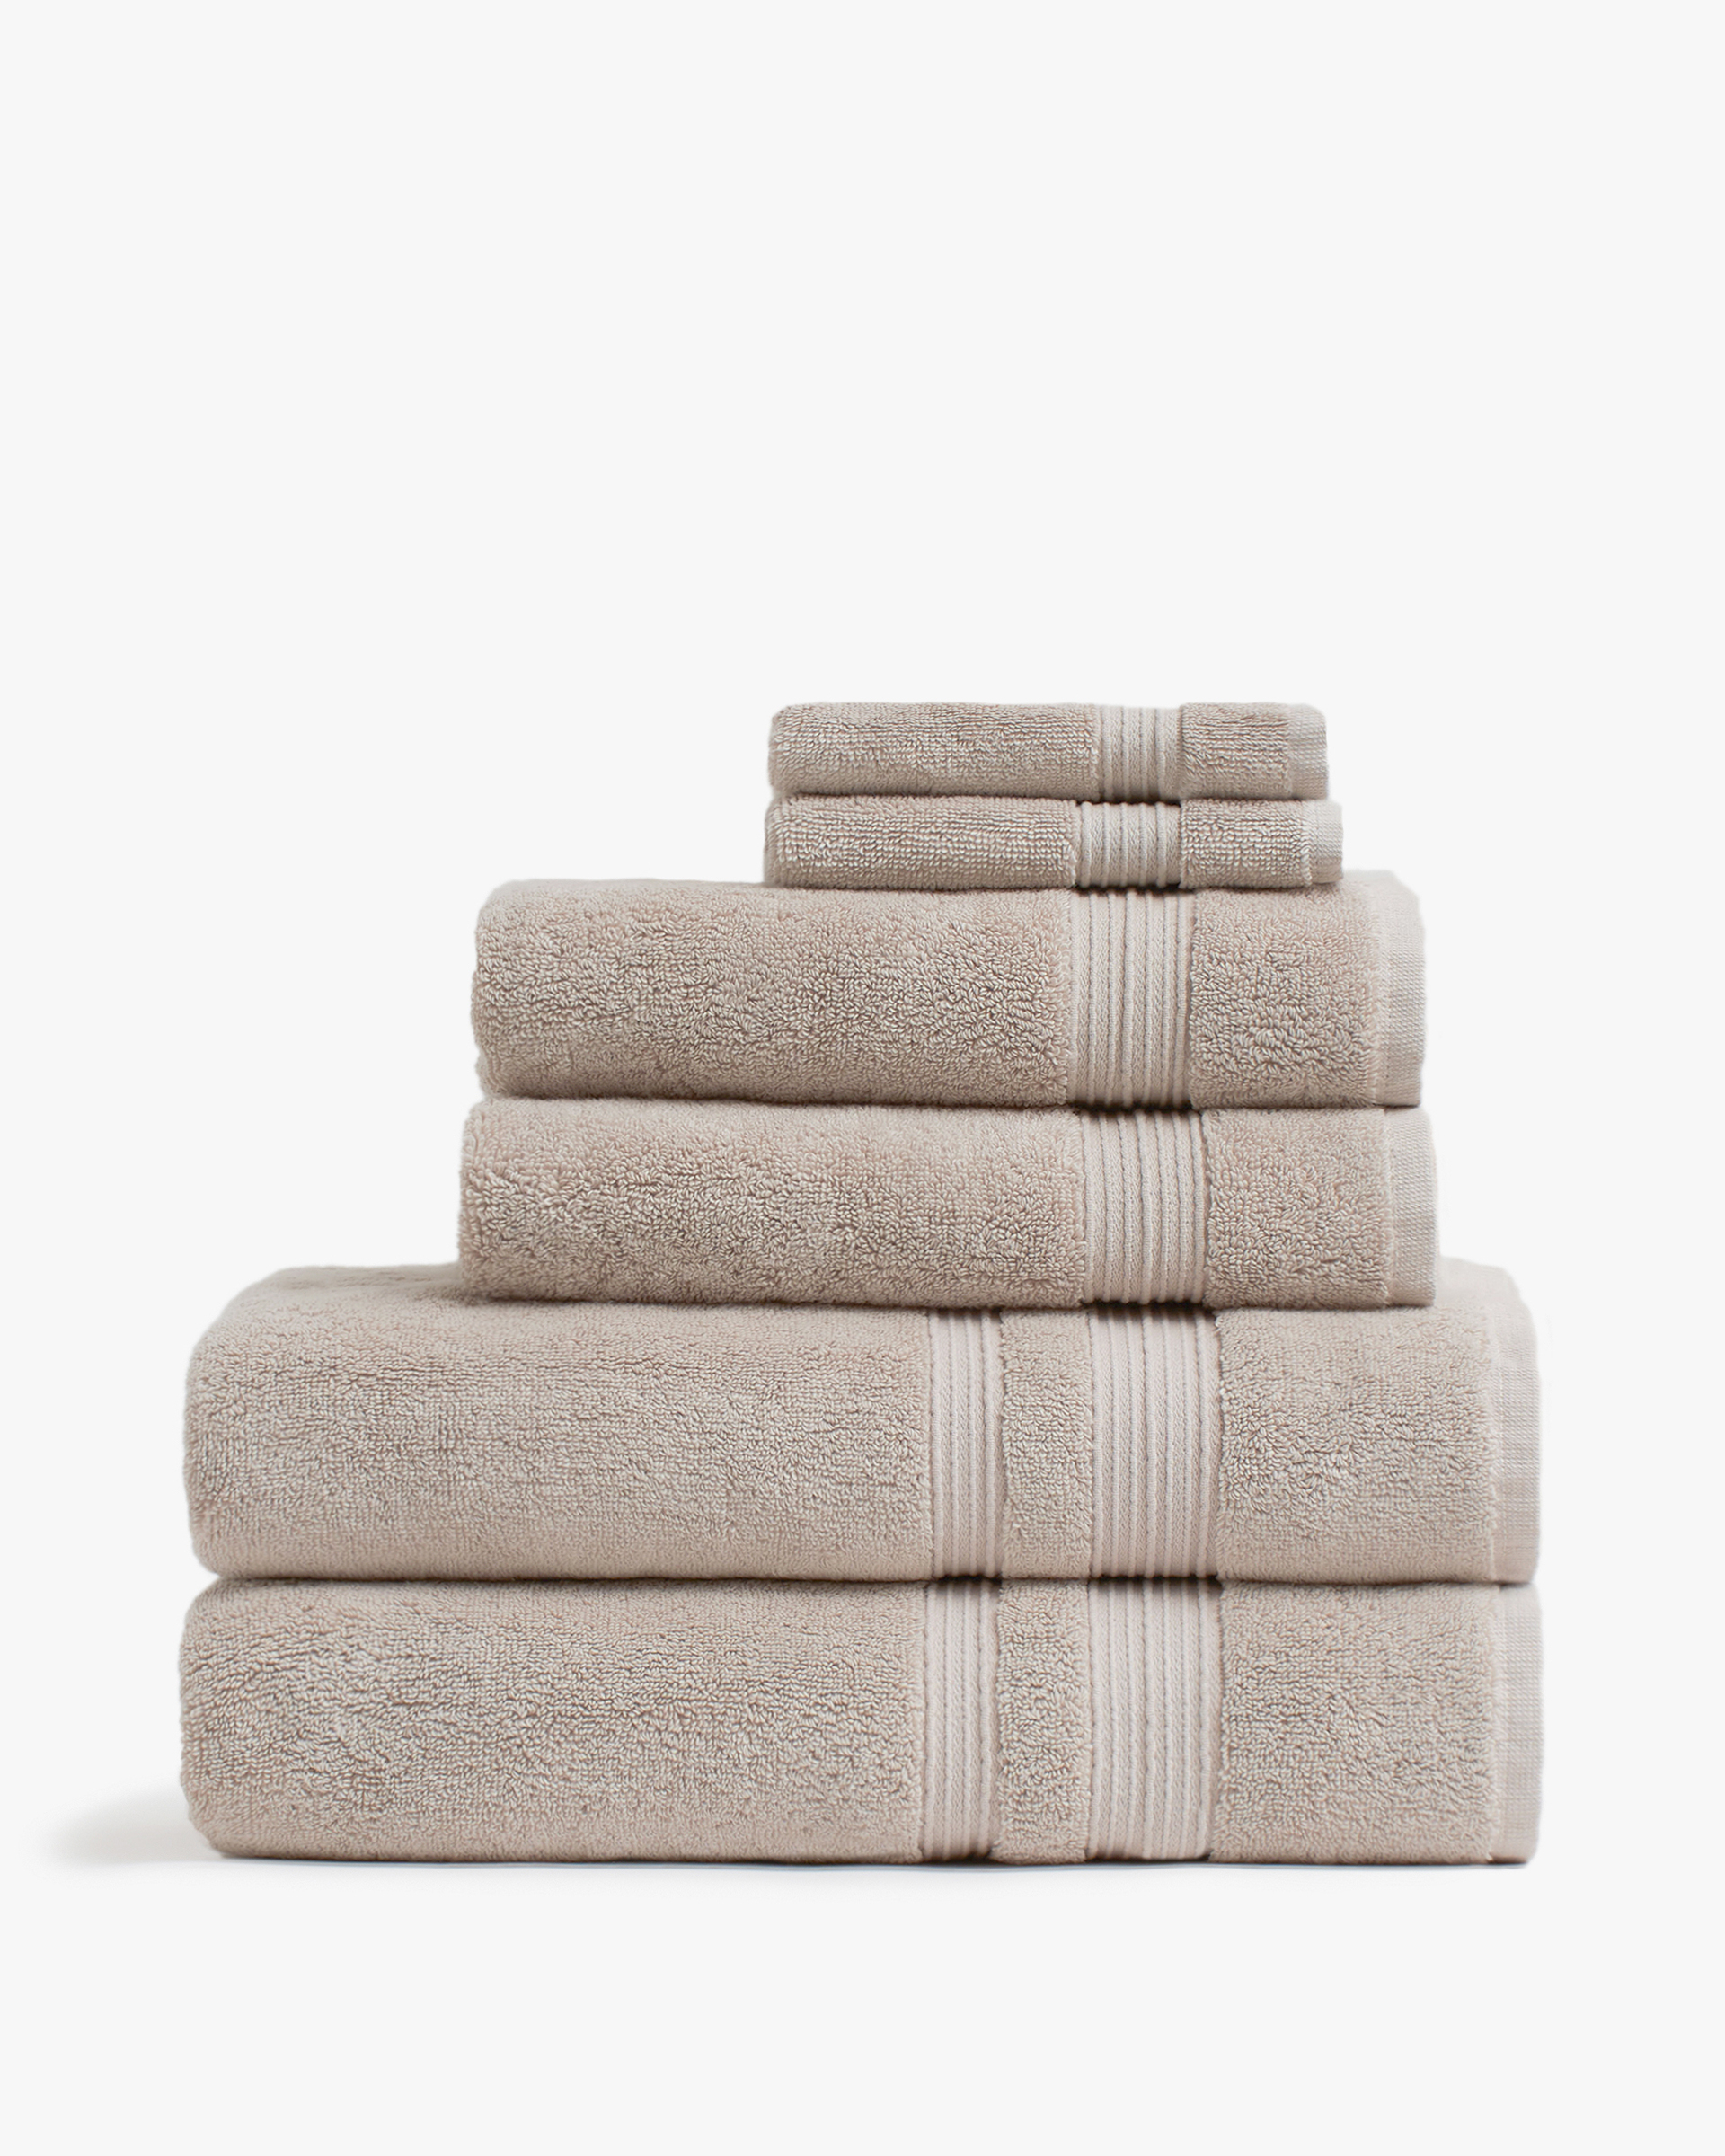 Банное полотенце. Стопка полотенец. Лучшее банное полотенце. Текстура банного полотенца. Полотенце h1